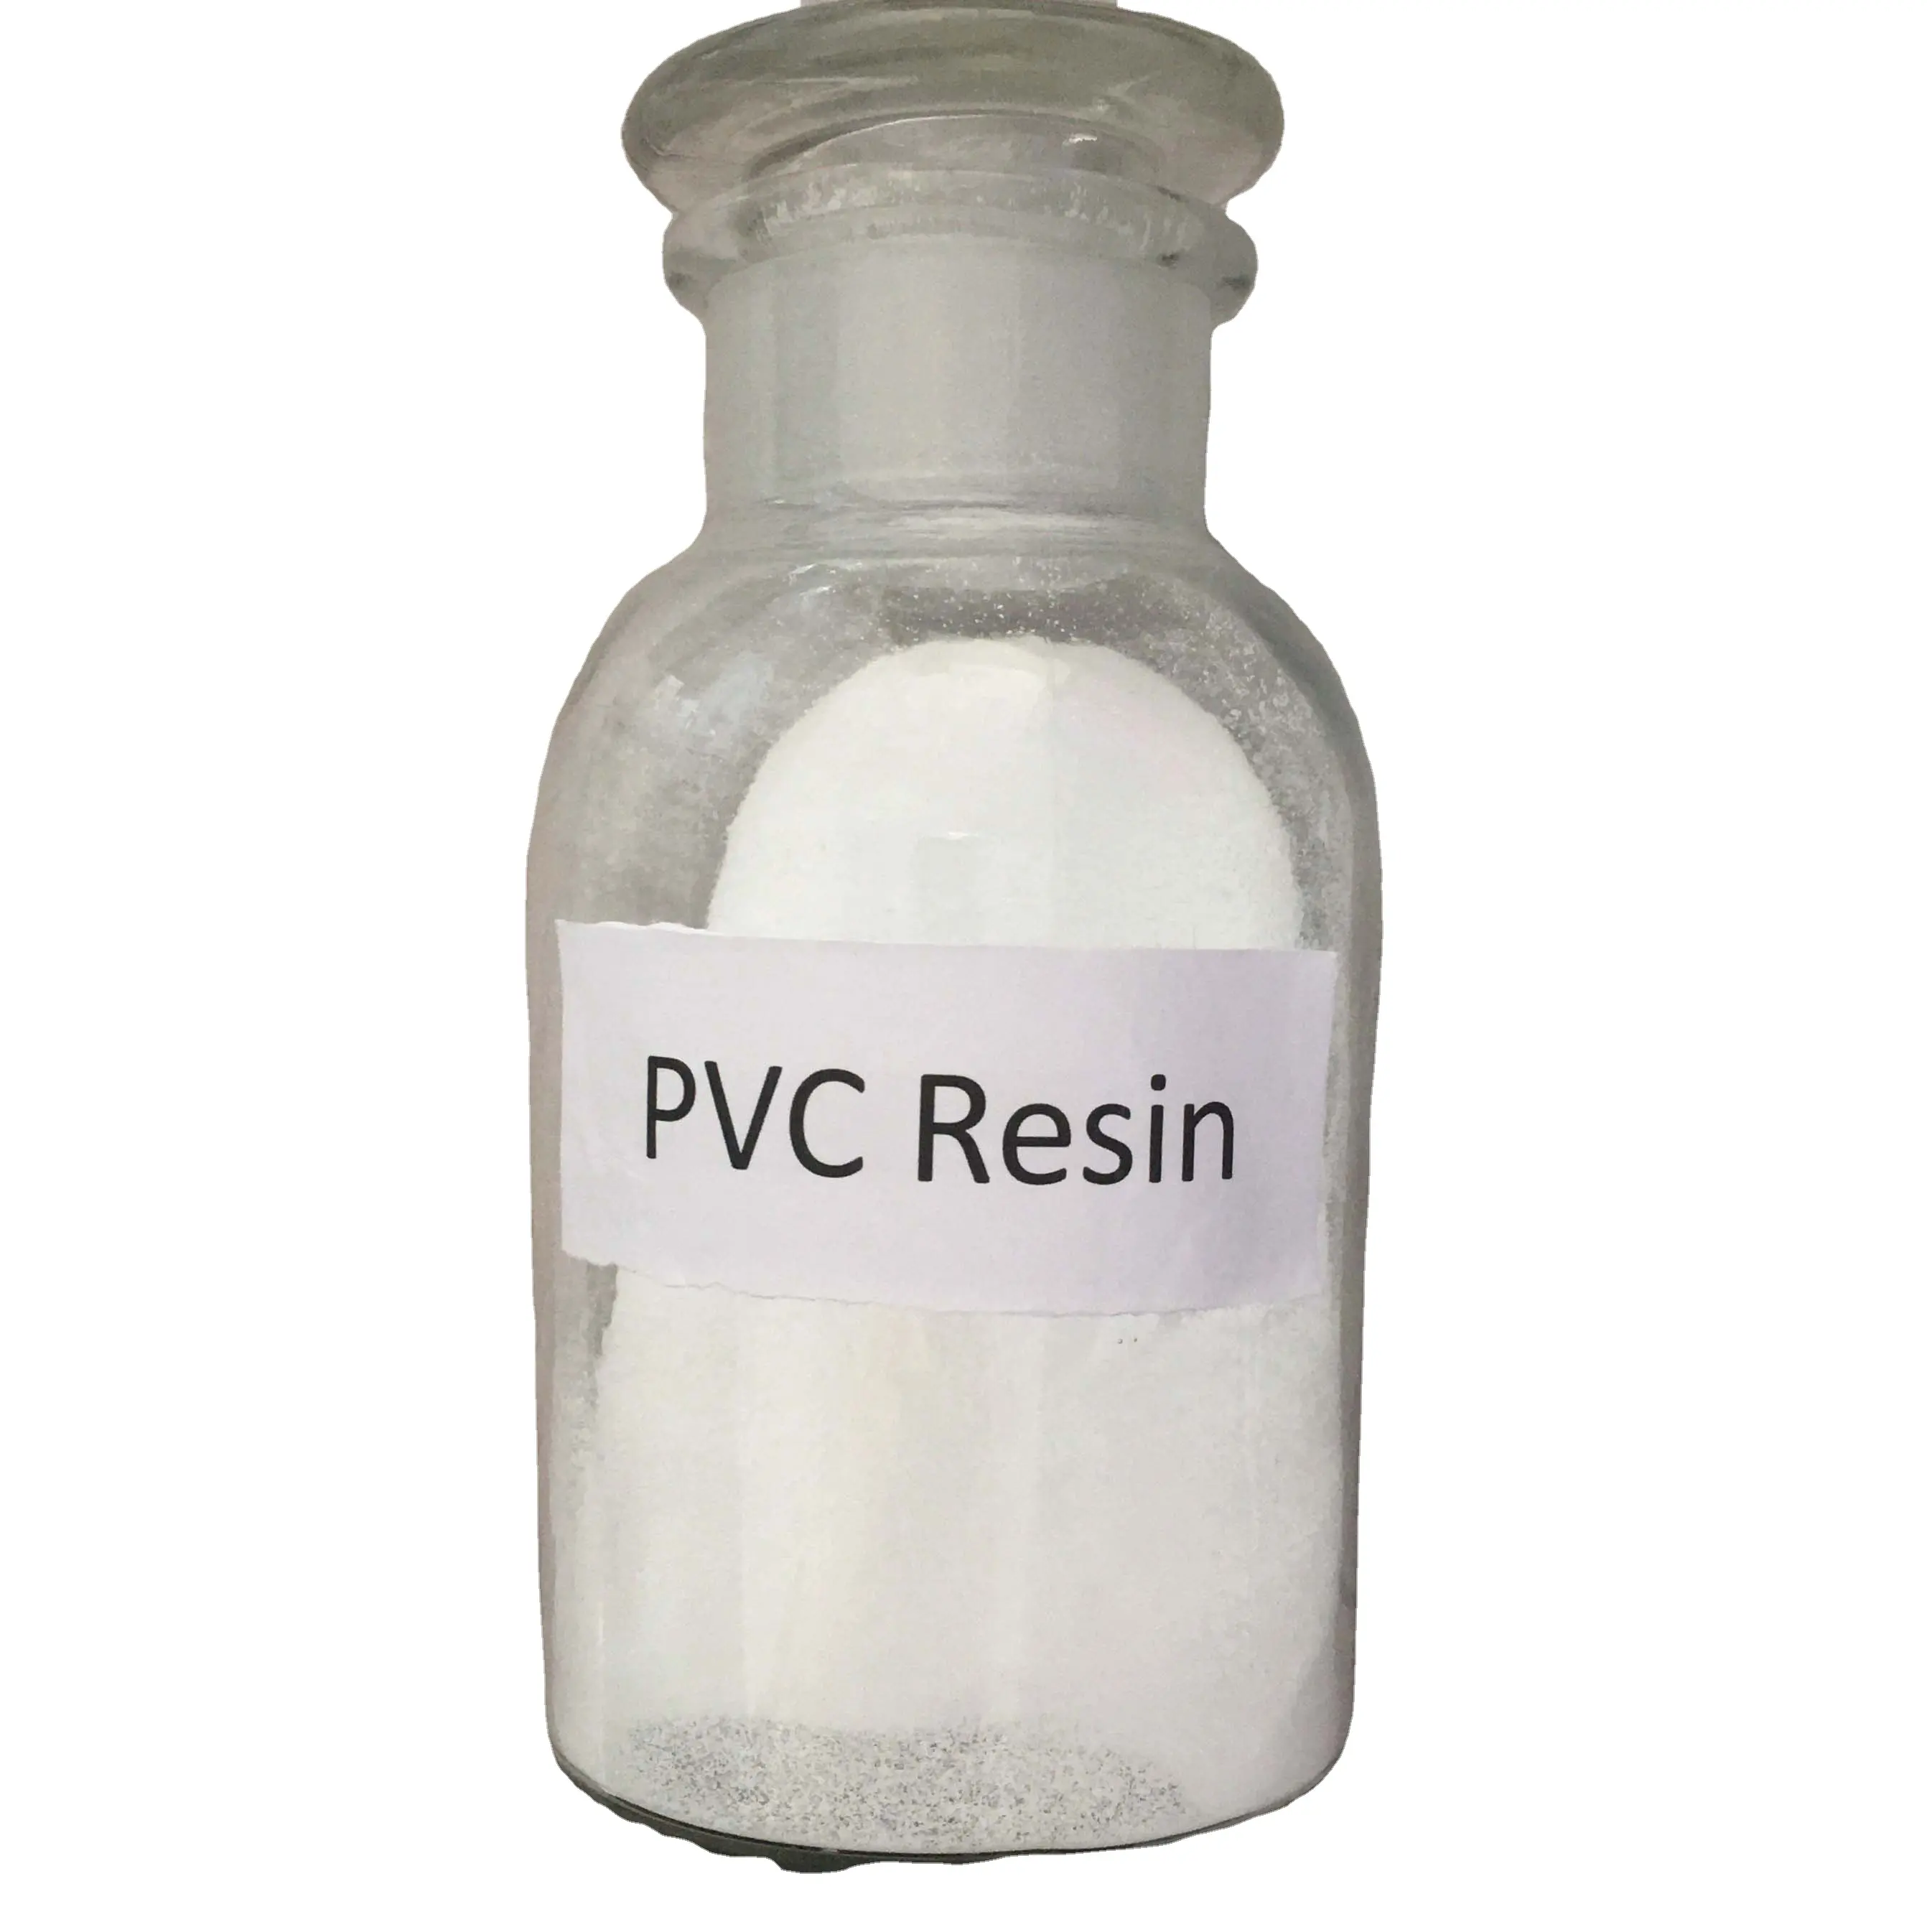 Polyvinyl clorua S1000 Ethylene phương pháp giá thấp bột màu trắng nhựa PVC